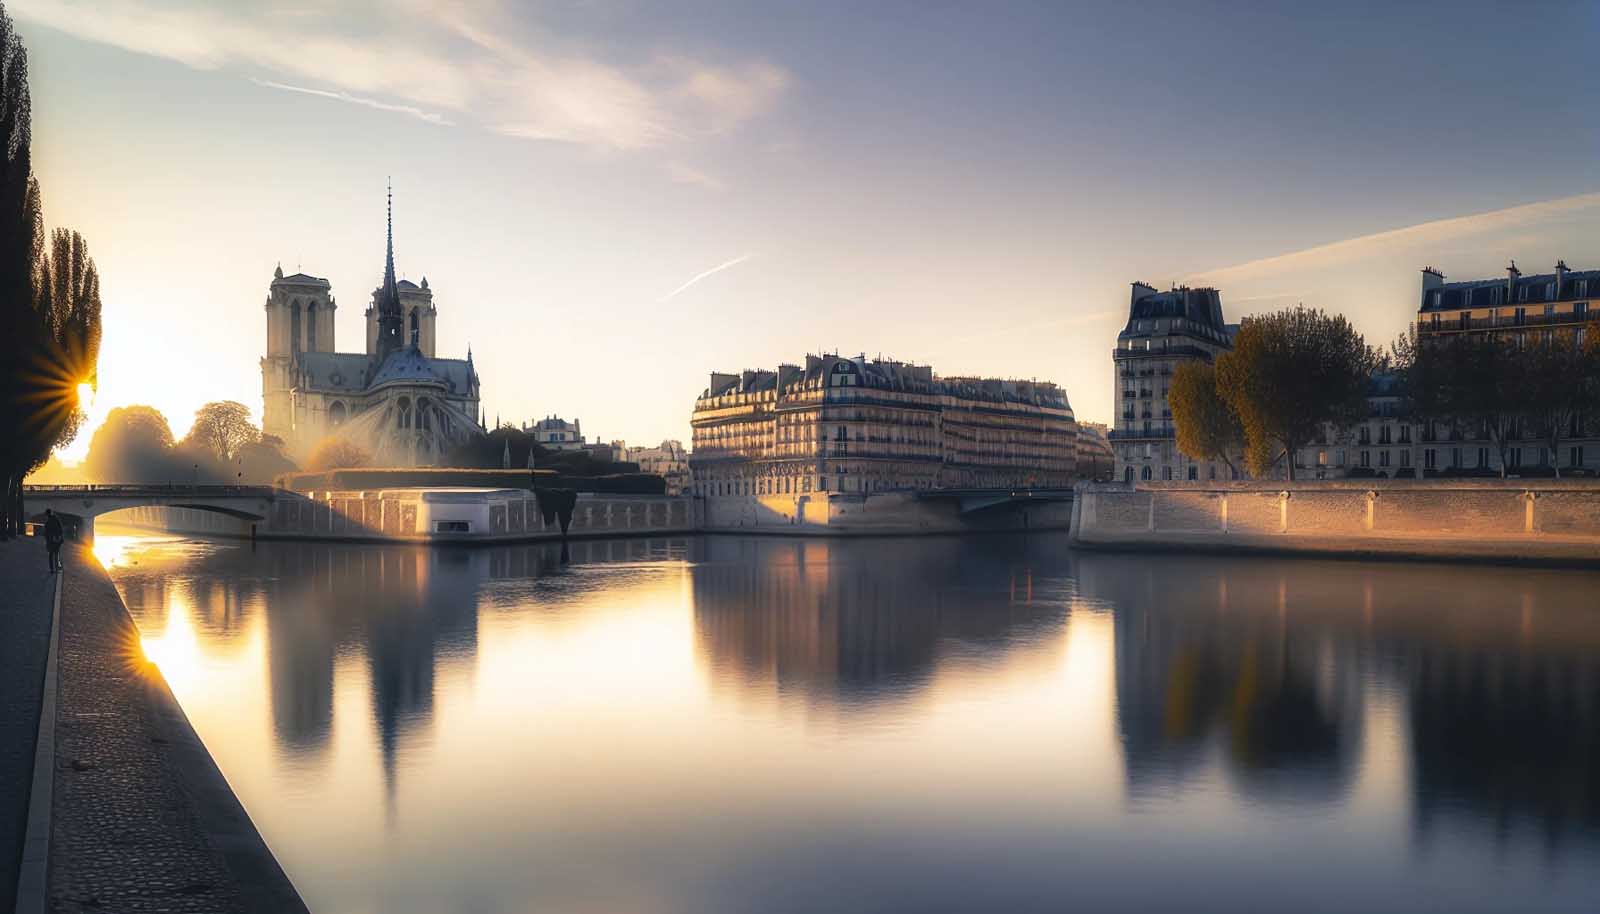 Sunrise over the Île de la Cité with Notre Dame Cathedral